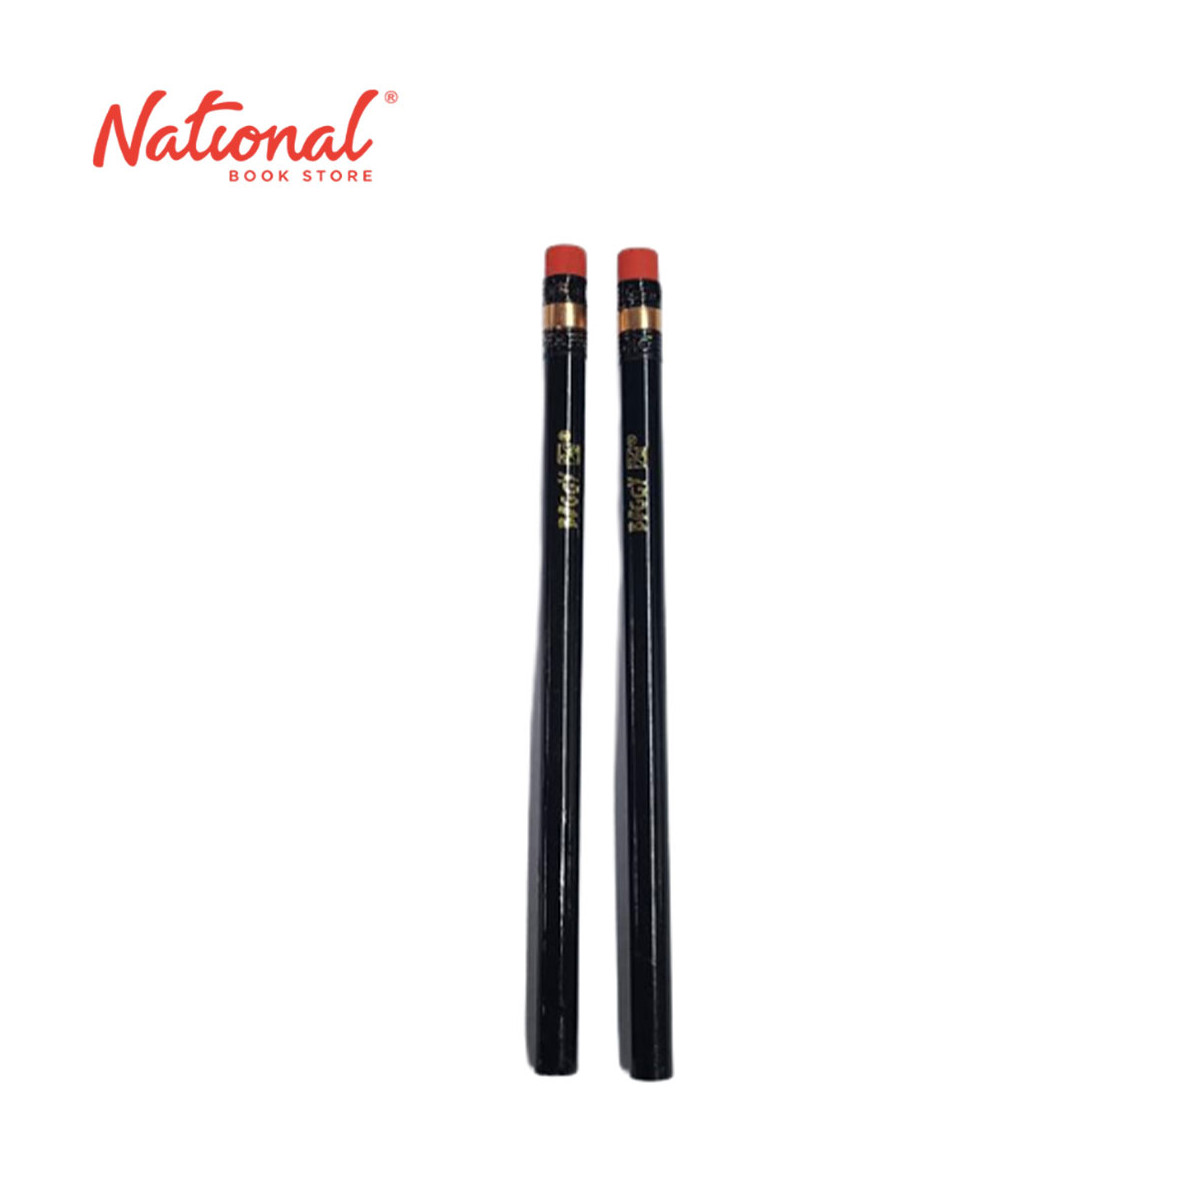 Best Buy Biggy Jumbo Wooden Pencils Black no. 2 2's - School & Office Supplies